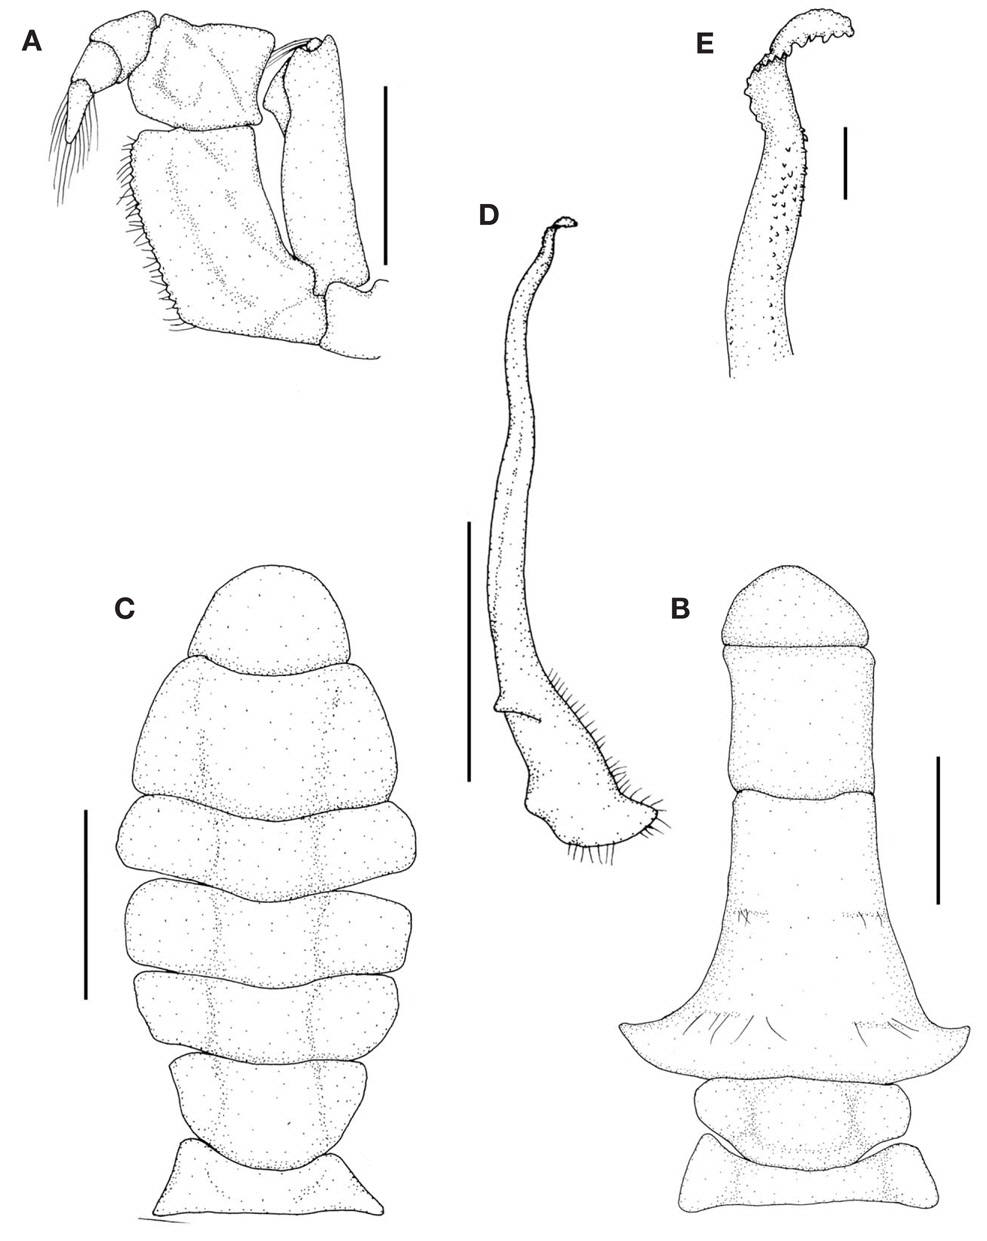 Etisus laevimanus. A, Left third maxilliped; B, Male abdomen; C, Female abdomen; D, Left male first gonopod, ventral view; E, Tip of left male first gonopod, ventral view. Scale bars: A-D=5 mm, E=0.5 mm.